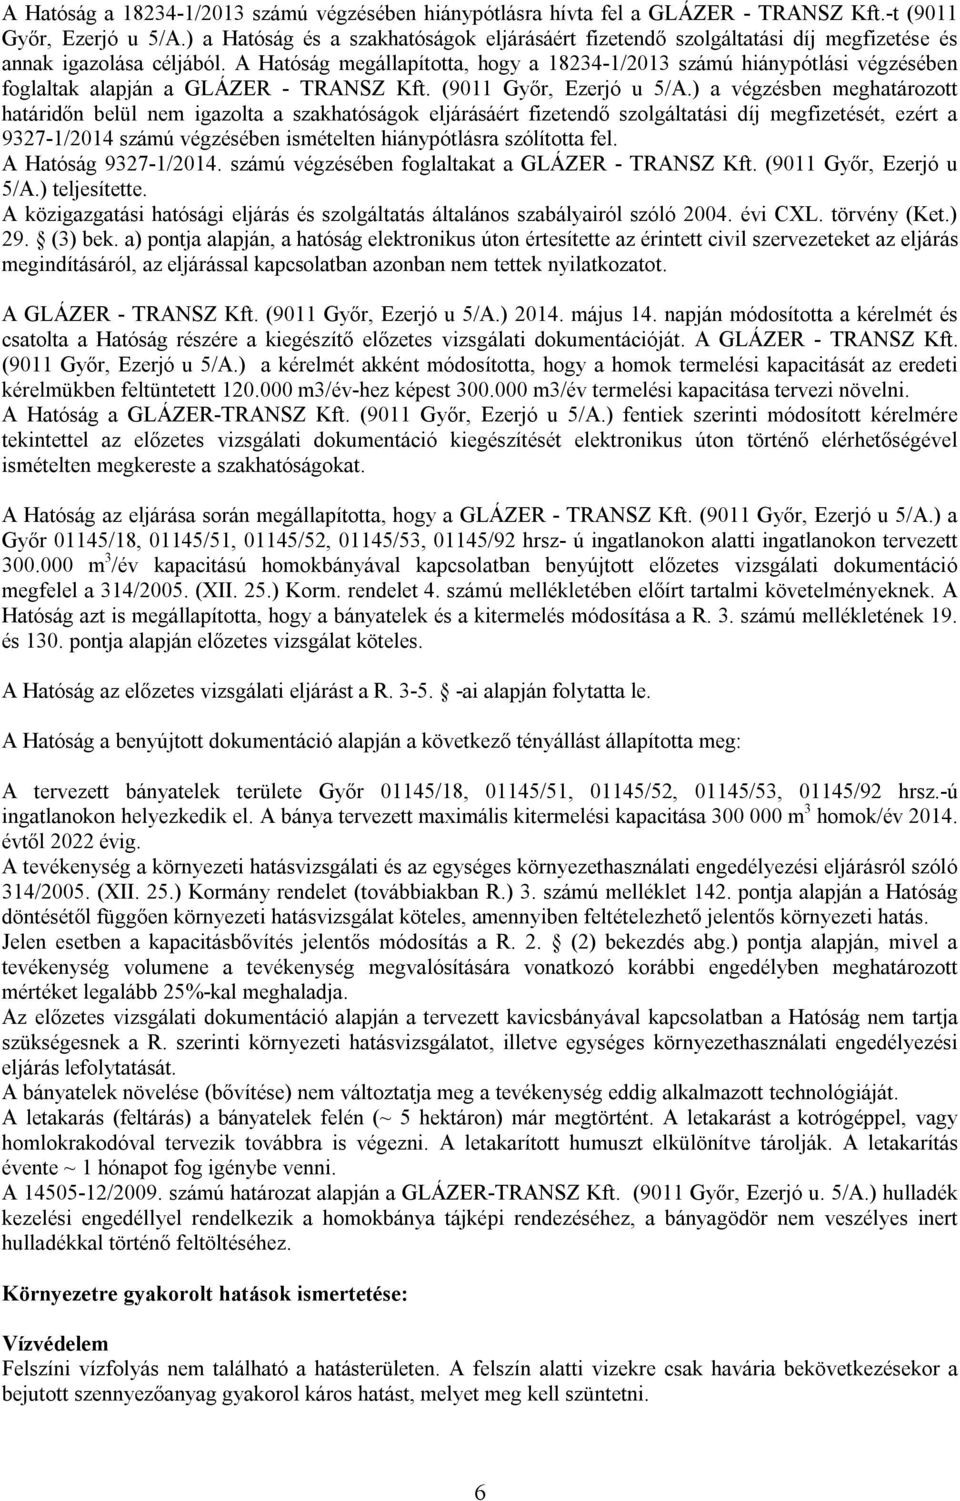 A Hatóság megállapította, hogy a 18234-1/2013 számú hiánypótlási végzésében foglaltak alapján a GLÁZER - TRANSZ Kft. (9011 Győr, Ezerjó u 5/A.